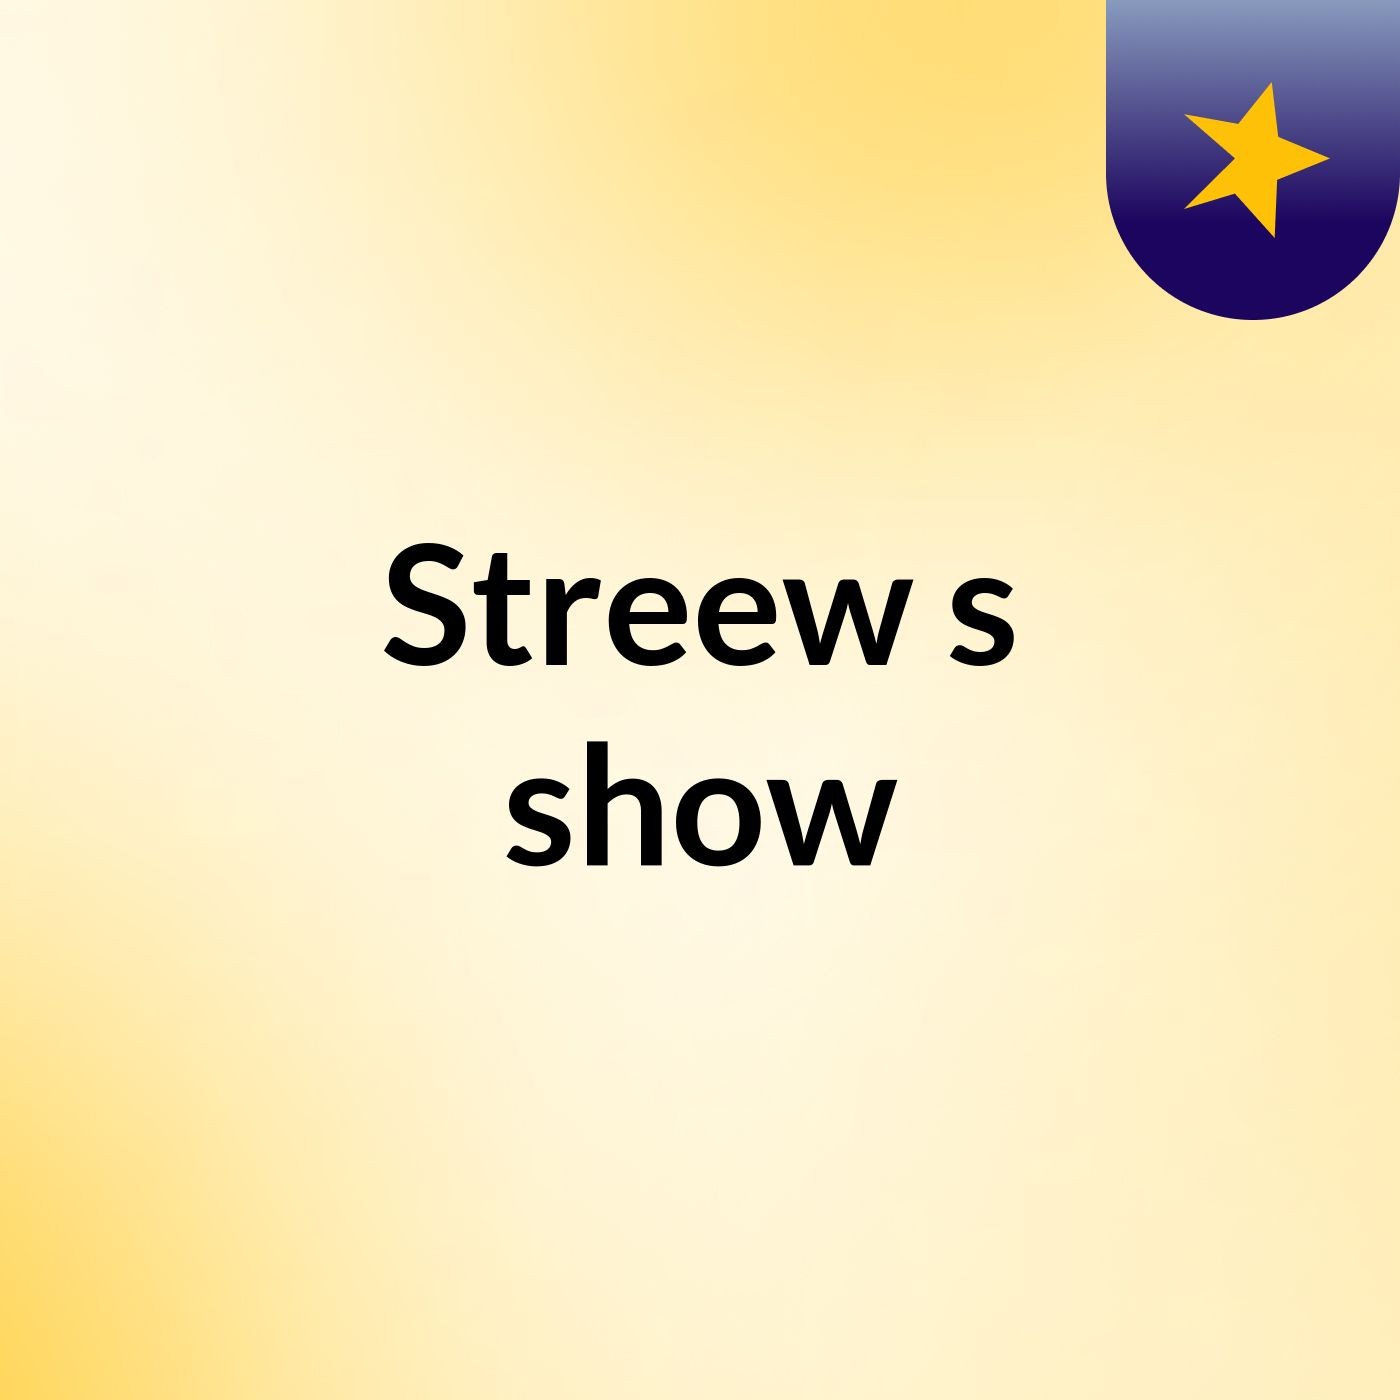 Streew's show